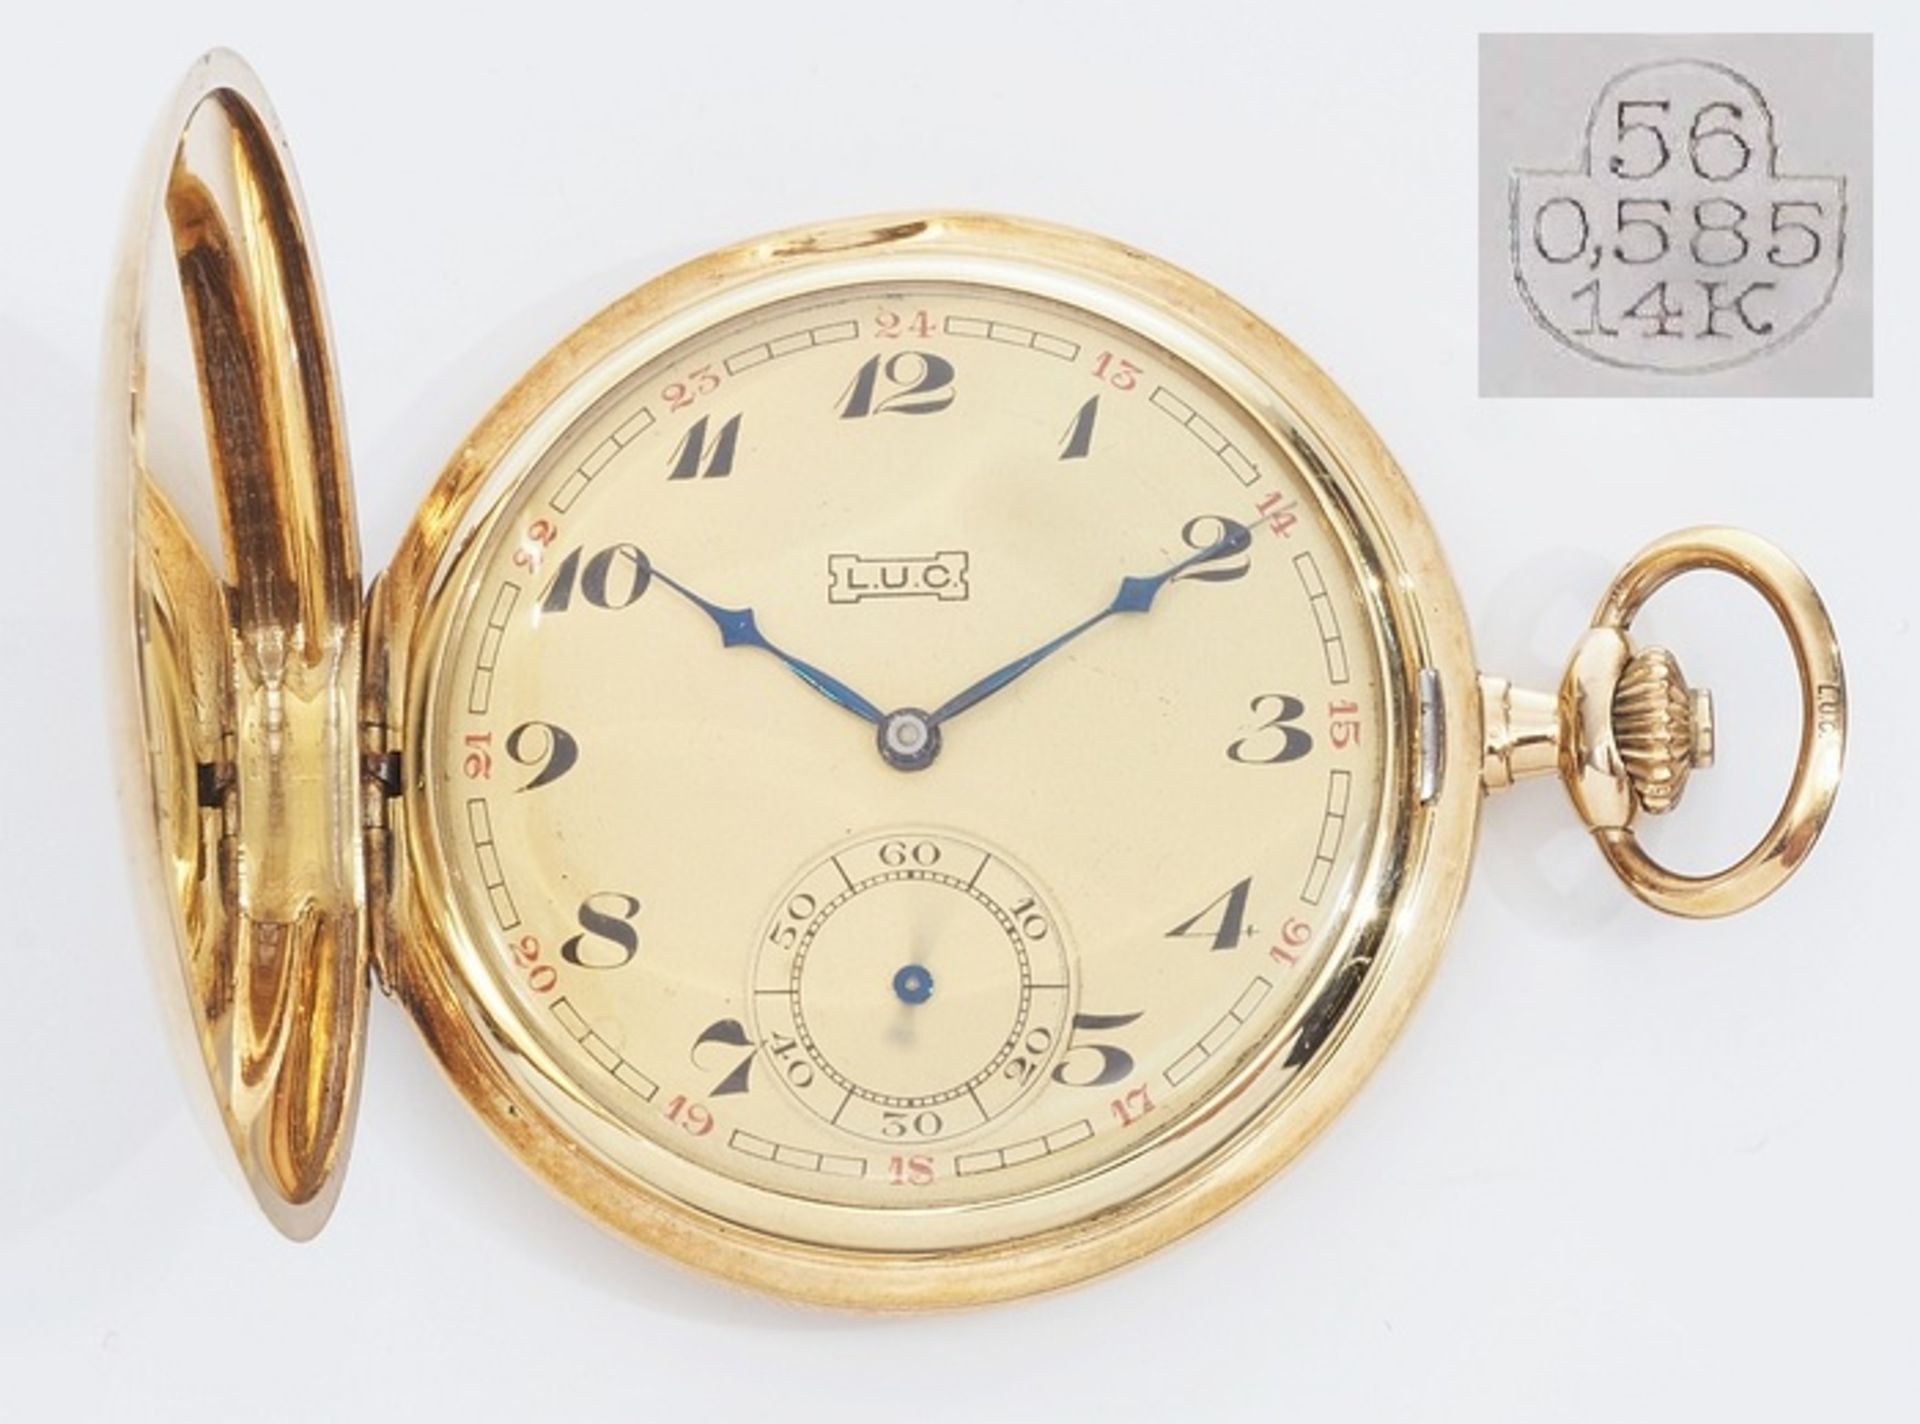 Sprungdeckel-Uhr. L.U.C. (Chopard). Alle Deckel 585er Gelbgold, Zifferblatt mit arabischen Zahlen